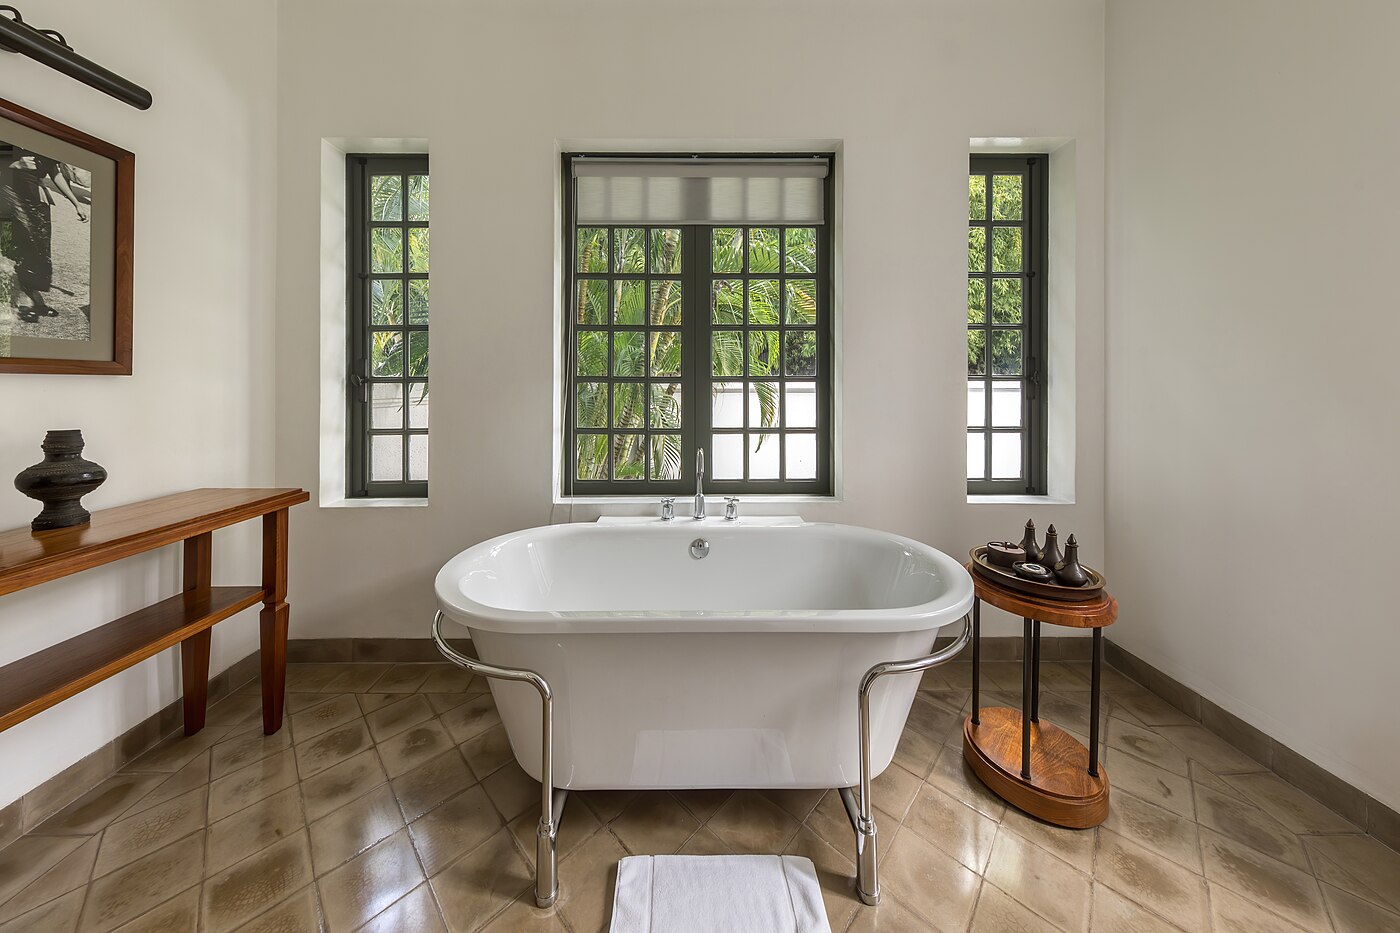 Bathtub of Khan Pool Suite in Amantaka luxury Resort & Hotel in Luang Prabang Laos